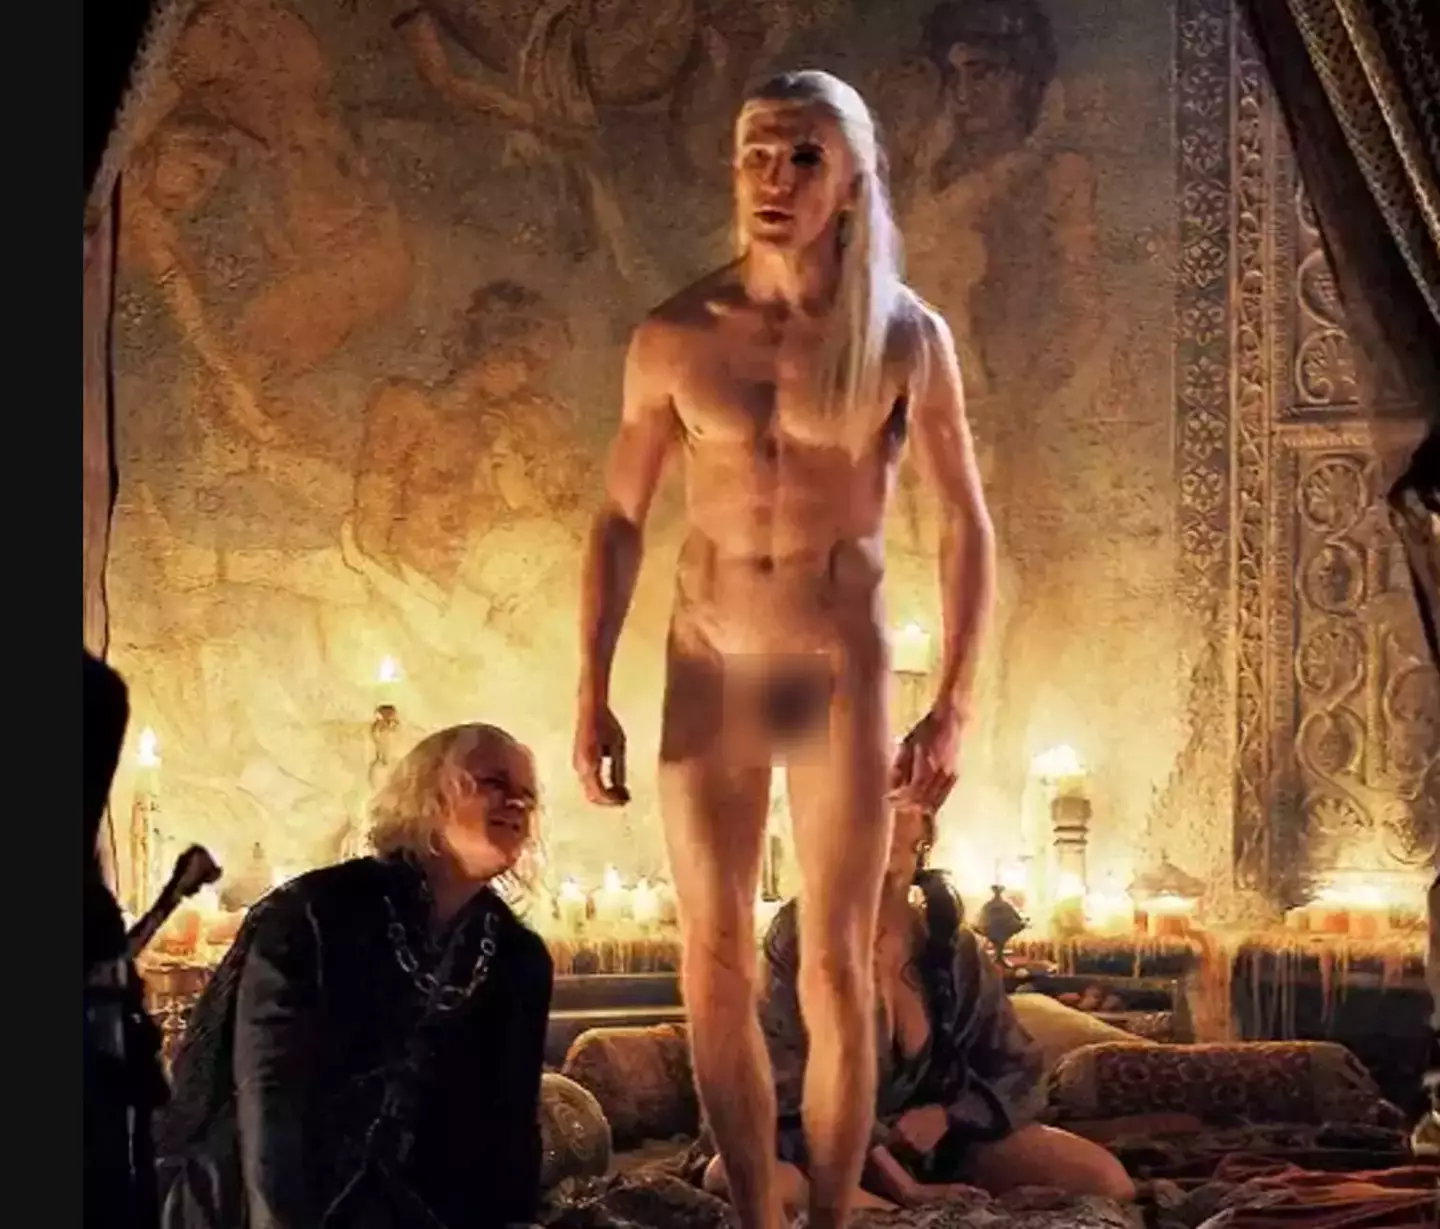 The scene saw Aemond Targaryen (Ewan Mitchell) standing completely naked (HBO)